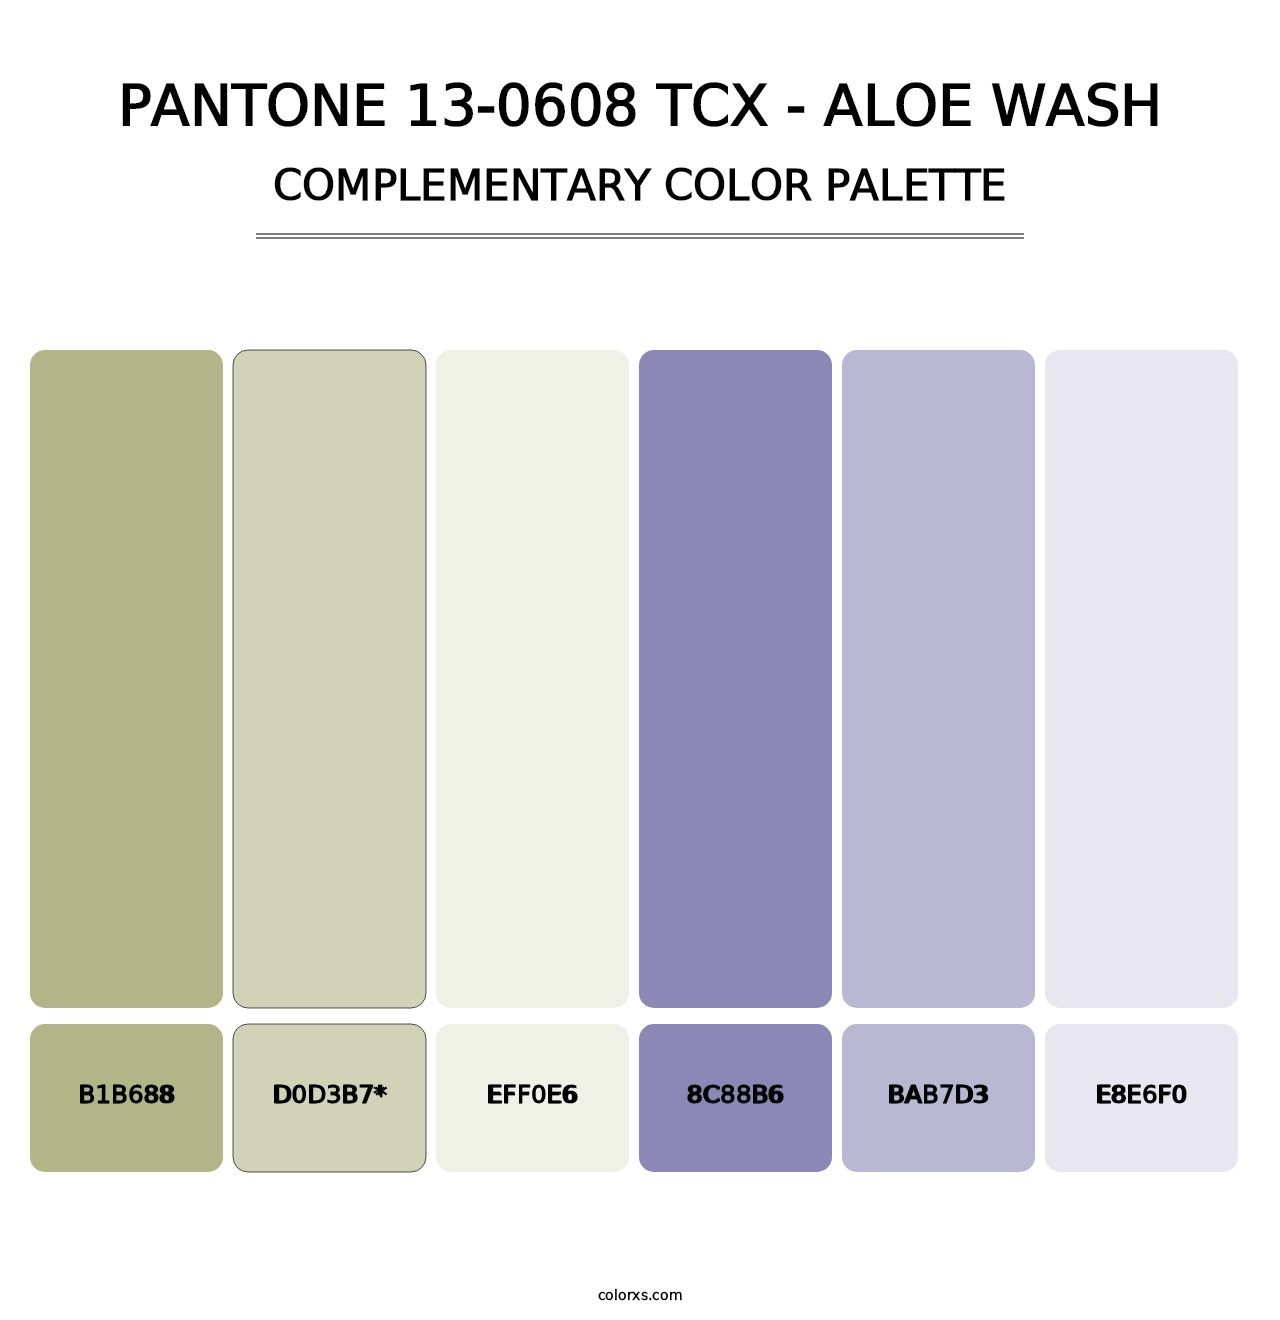 PANTONE 13-0608 TCX - Aloe Wash - Complementary Color Palette